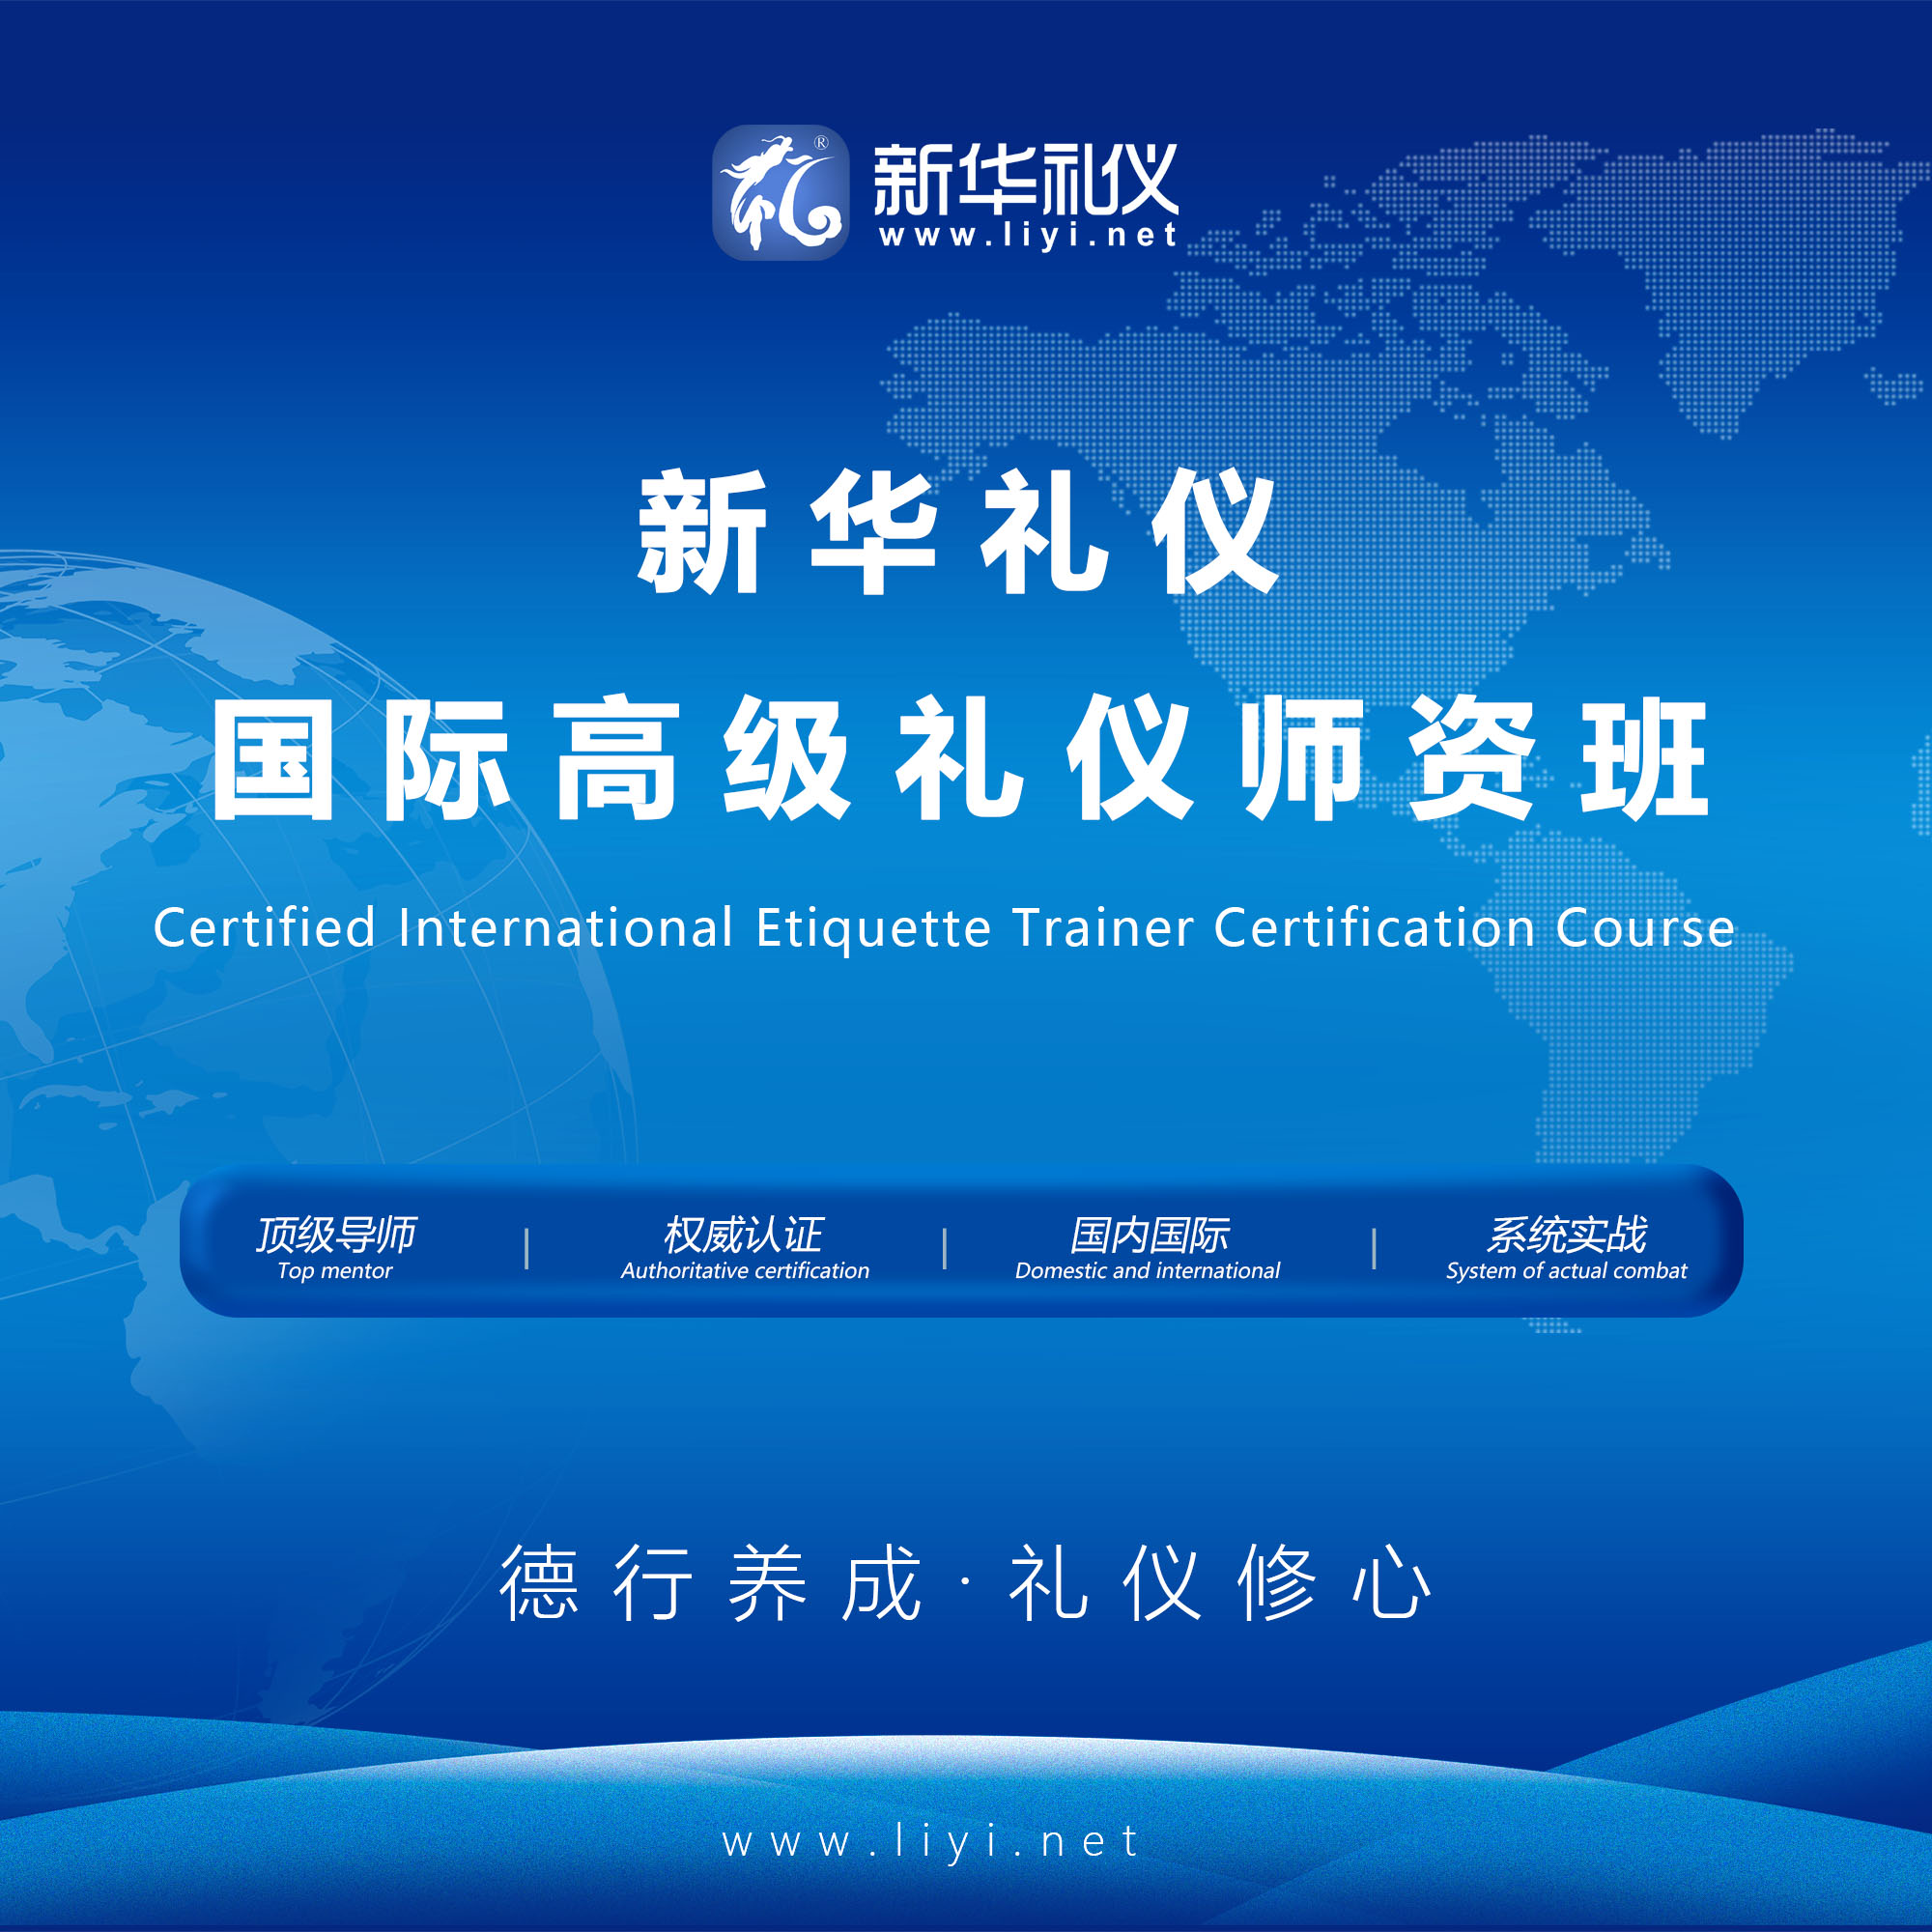 东城2020年6月25日·上海·新华礼伊《国际注册高级礼仪培训师认证班》